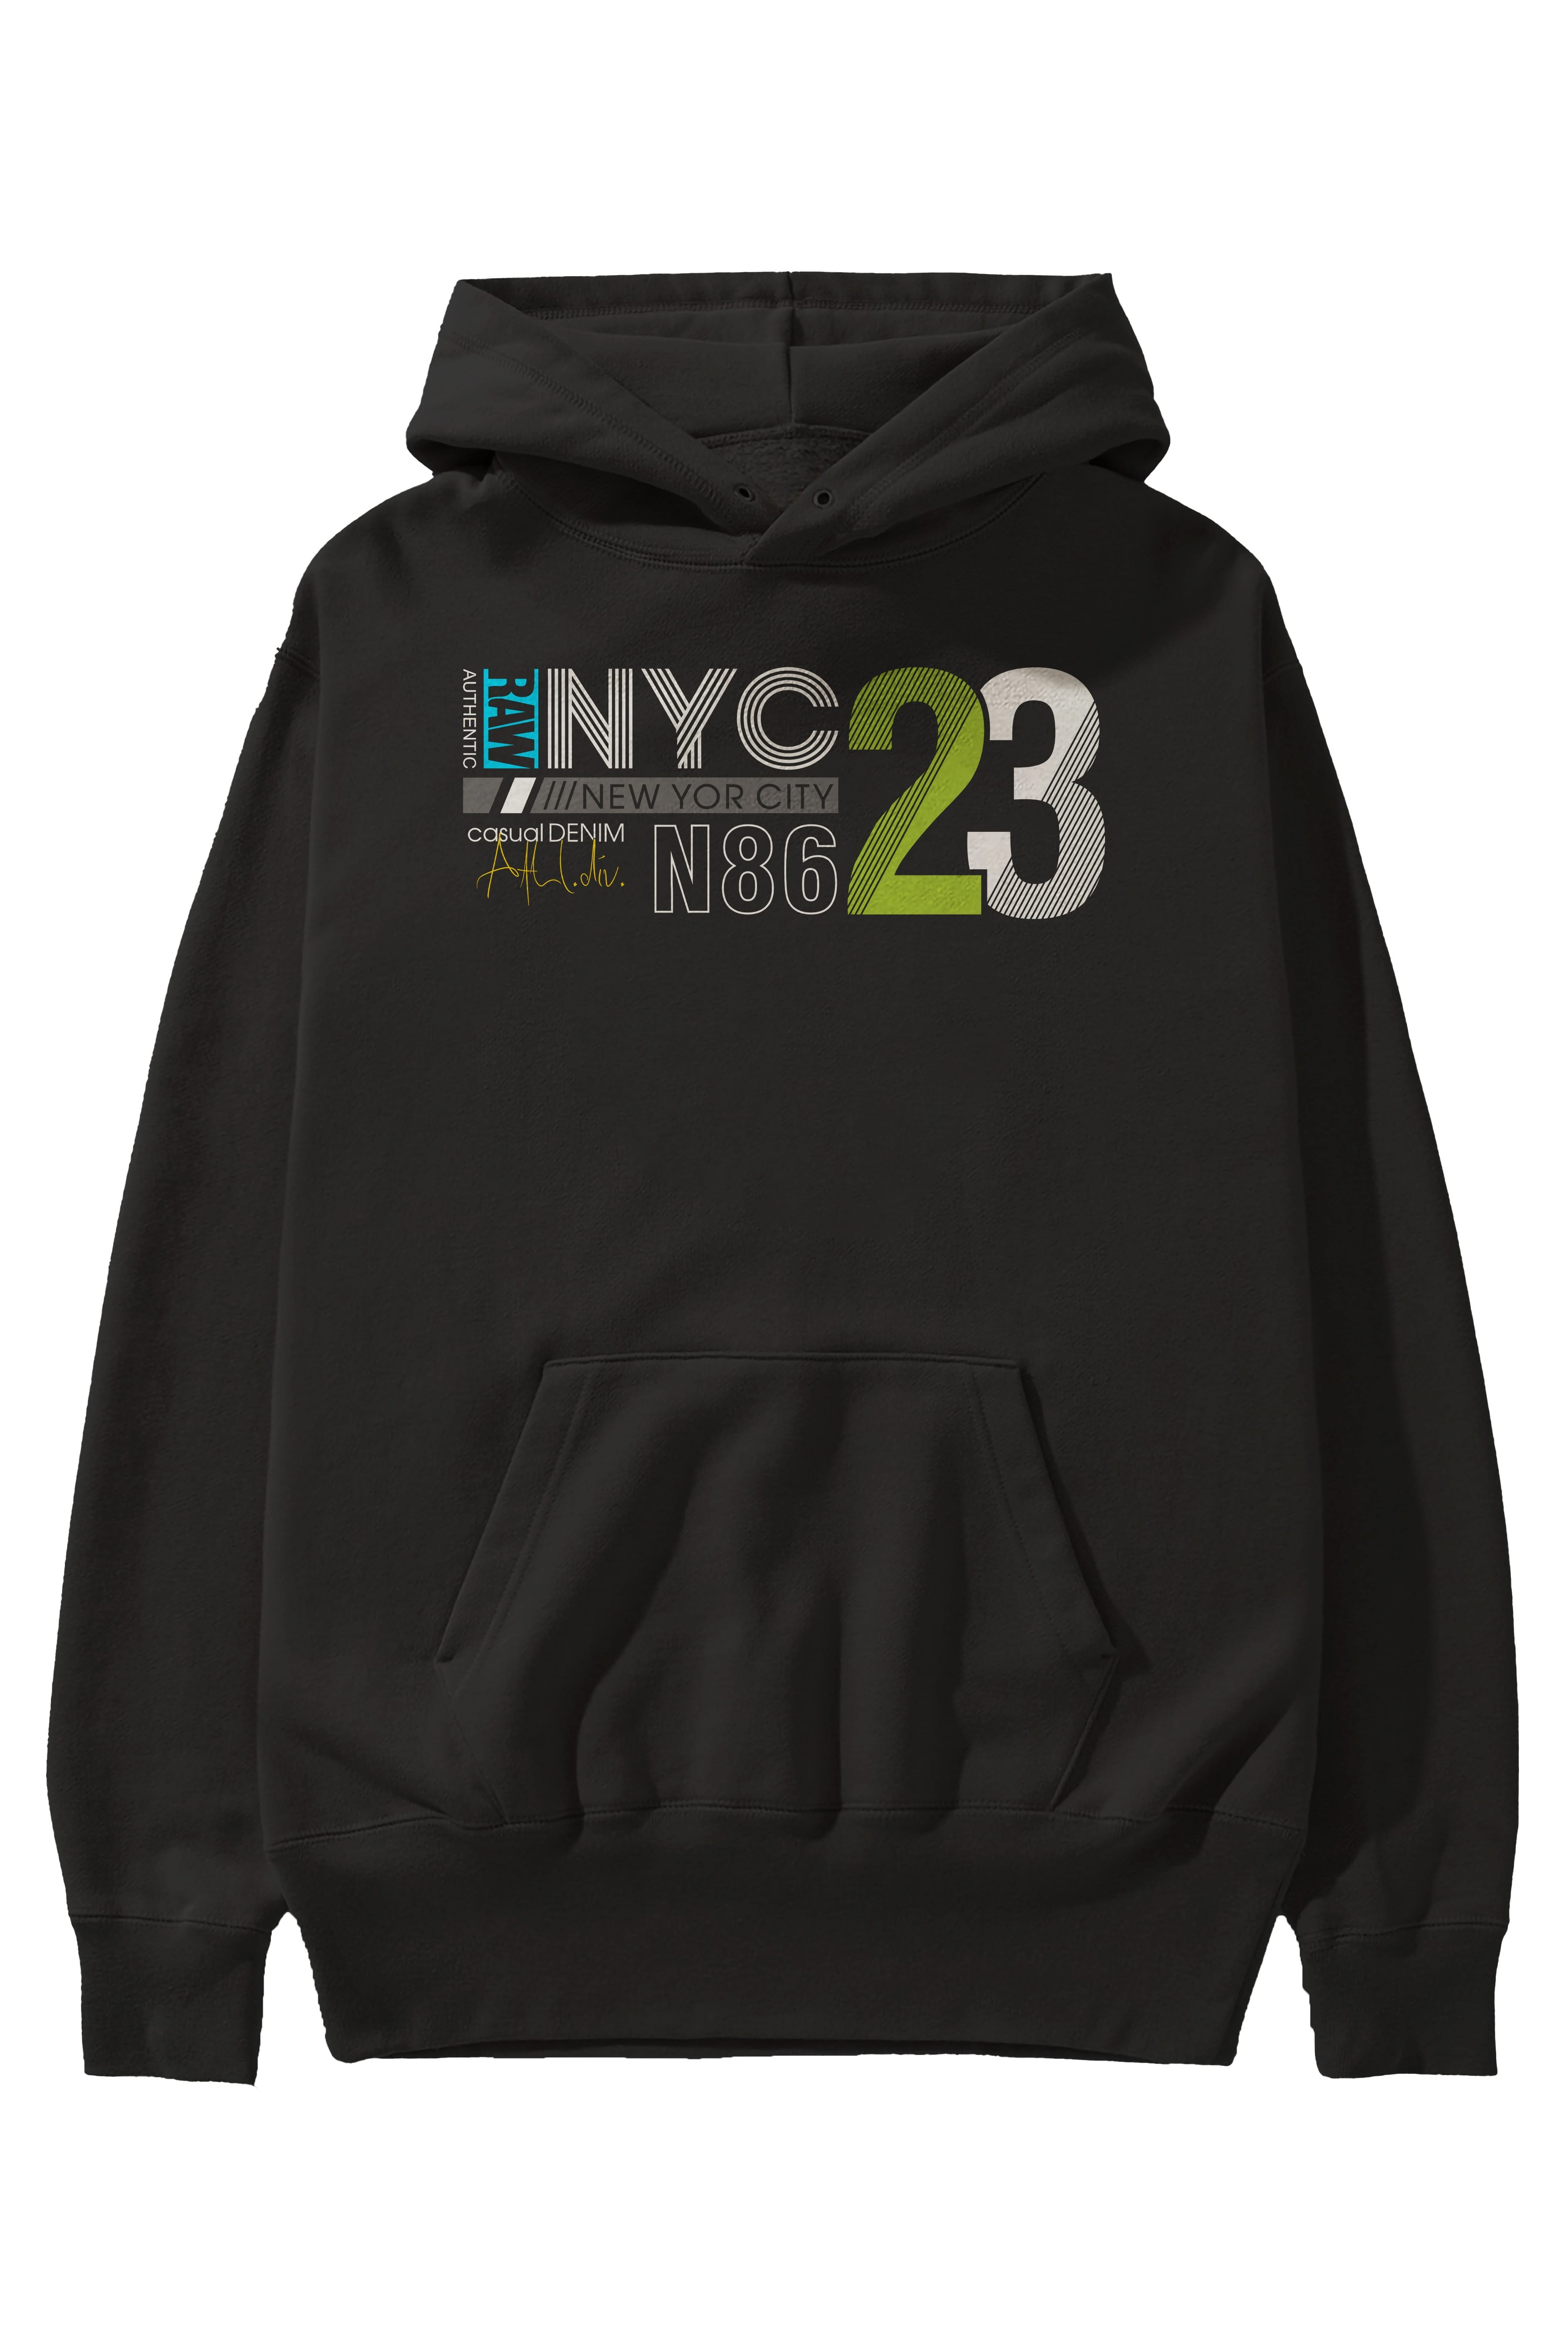 NYC 23 Ön Baskılı Oversize Hoodie Kapüşonlu Sweatshirt Erkek Kadın Unisex